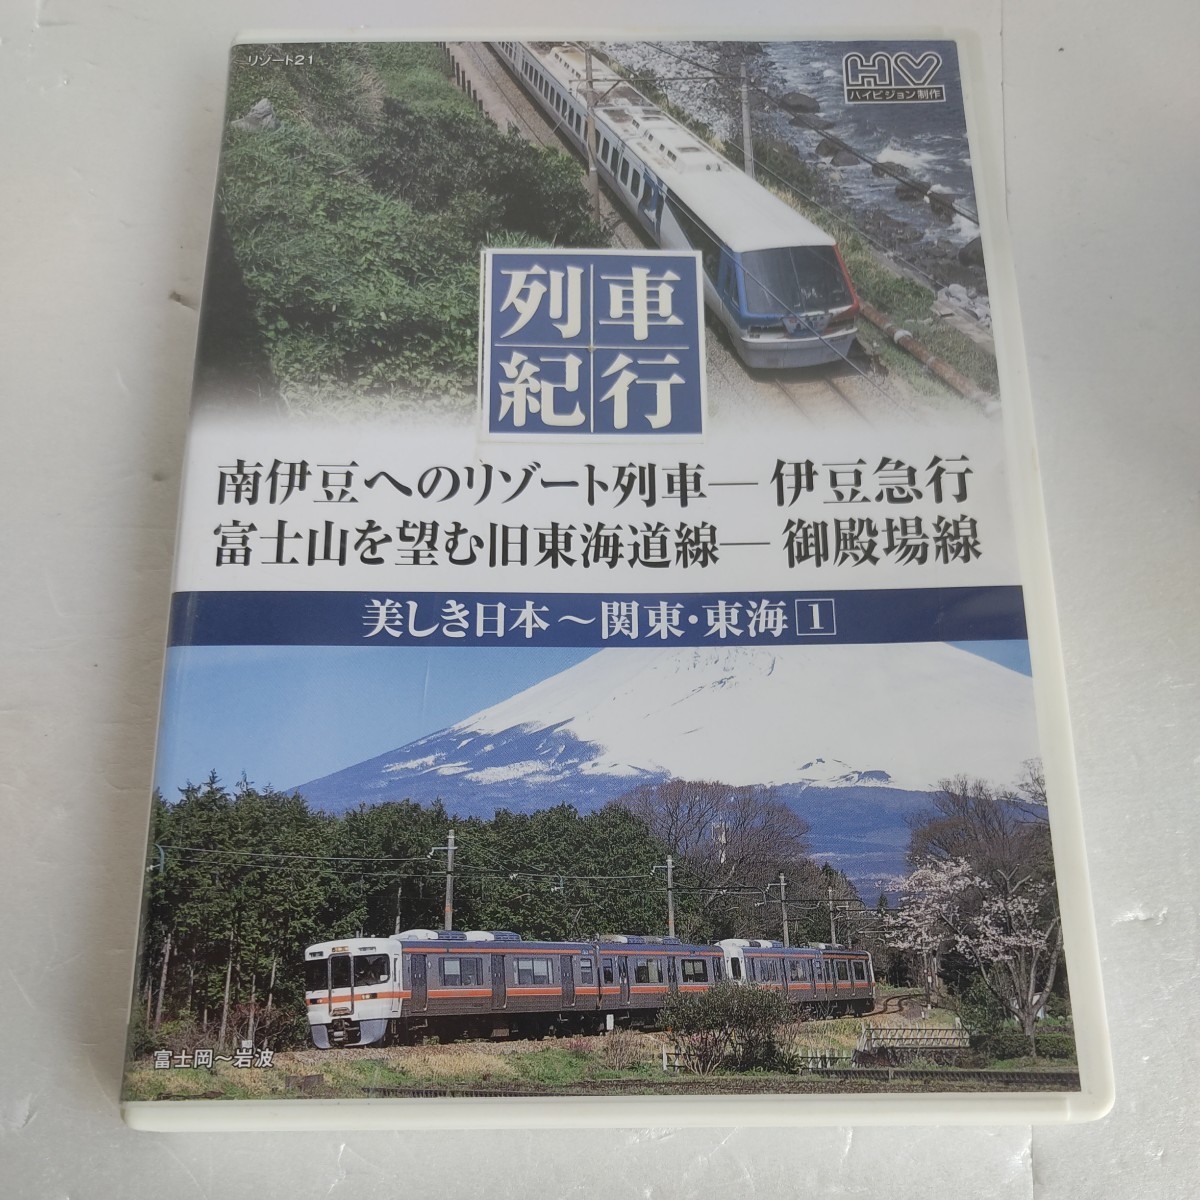 列車紀行 美しき日本 関東東海 1 伊豆急行 御殿場線 NTD-1128 DVD_画像1